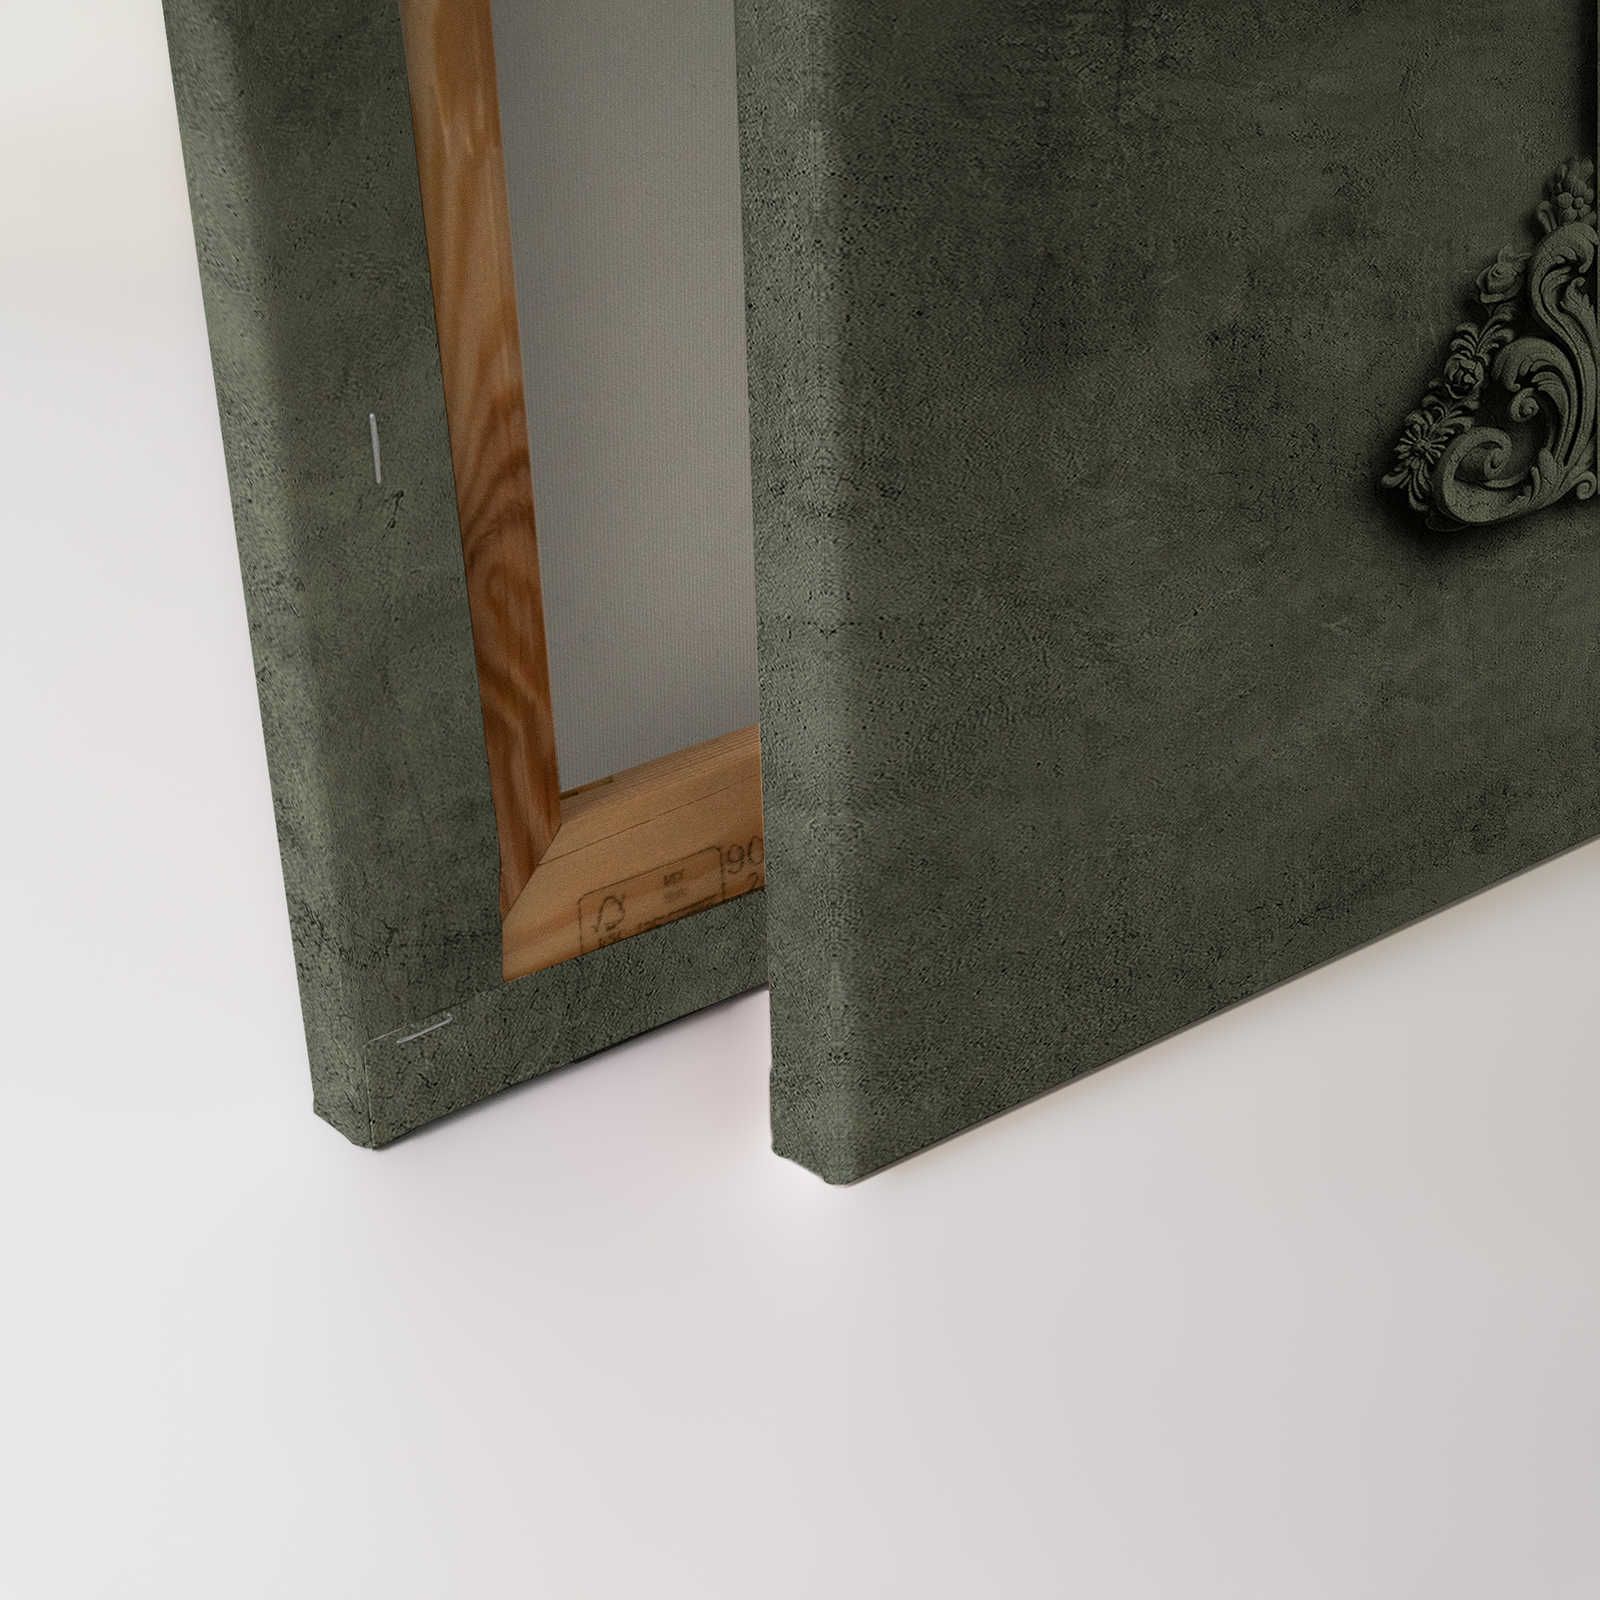             Lyon 2 - Quadro su tela 3D con cornice in stucco e aspetto in gesso di colore verde - 0,90 m x 0,60 m
        